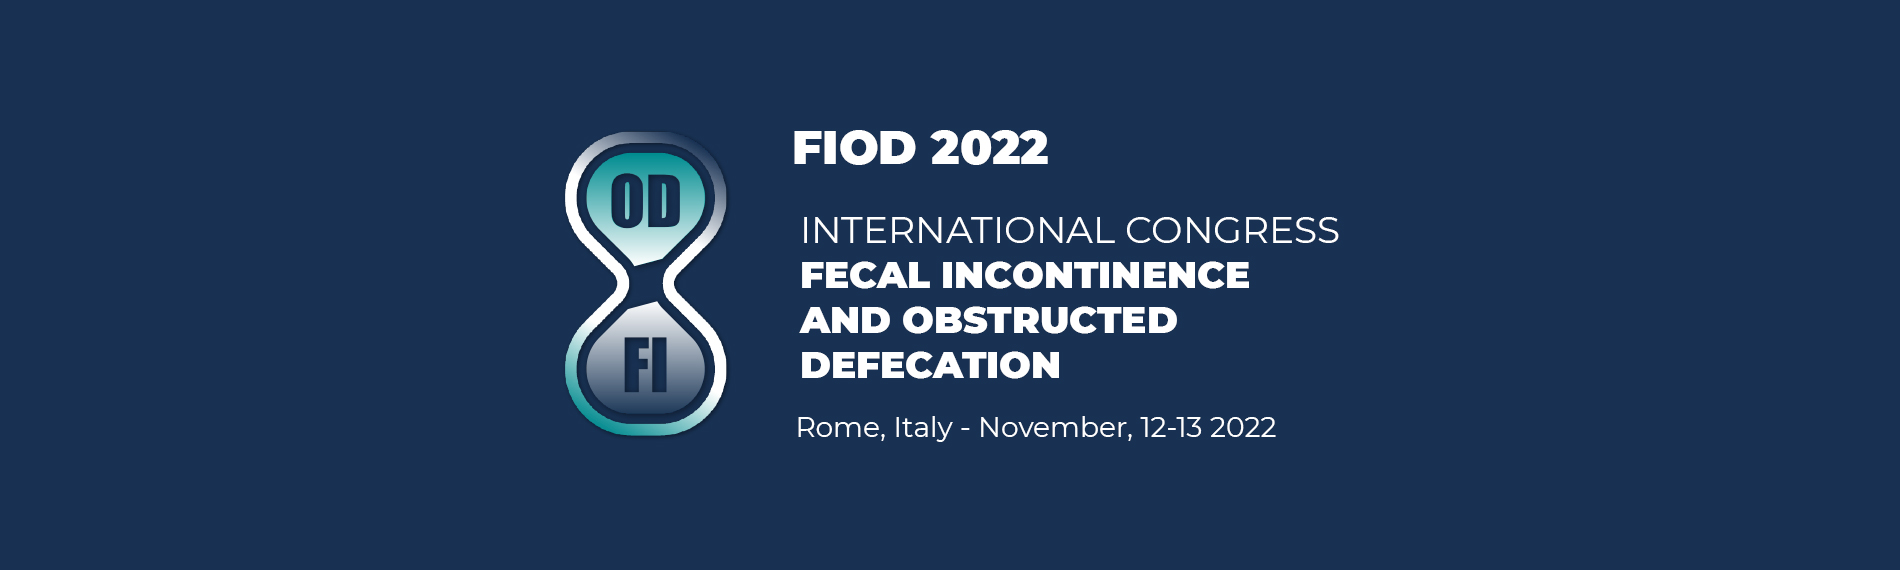 FIOD International Congress, 12-13 November 2022